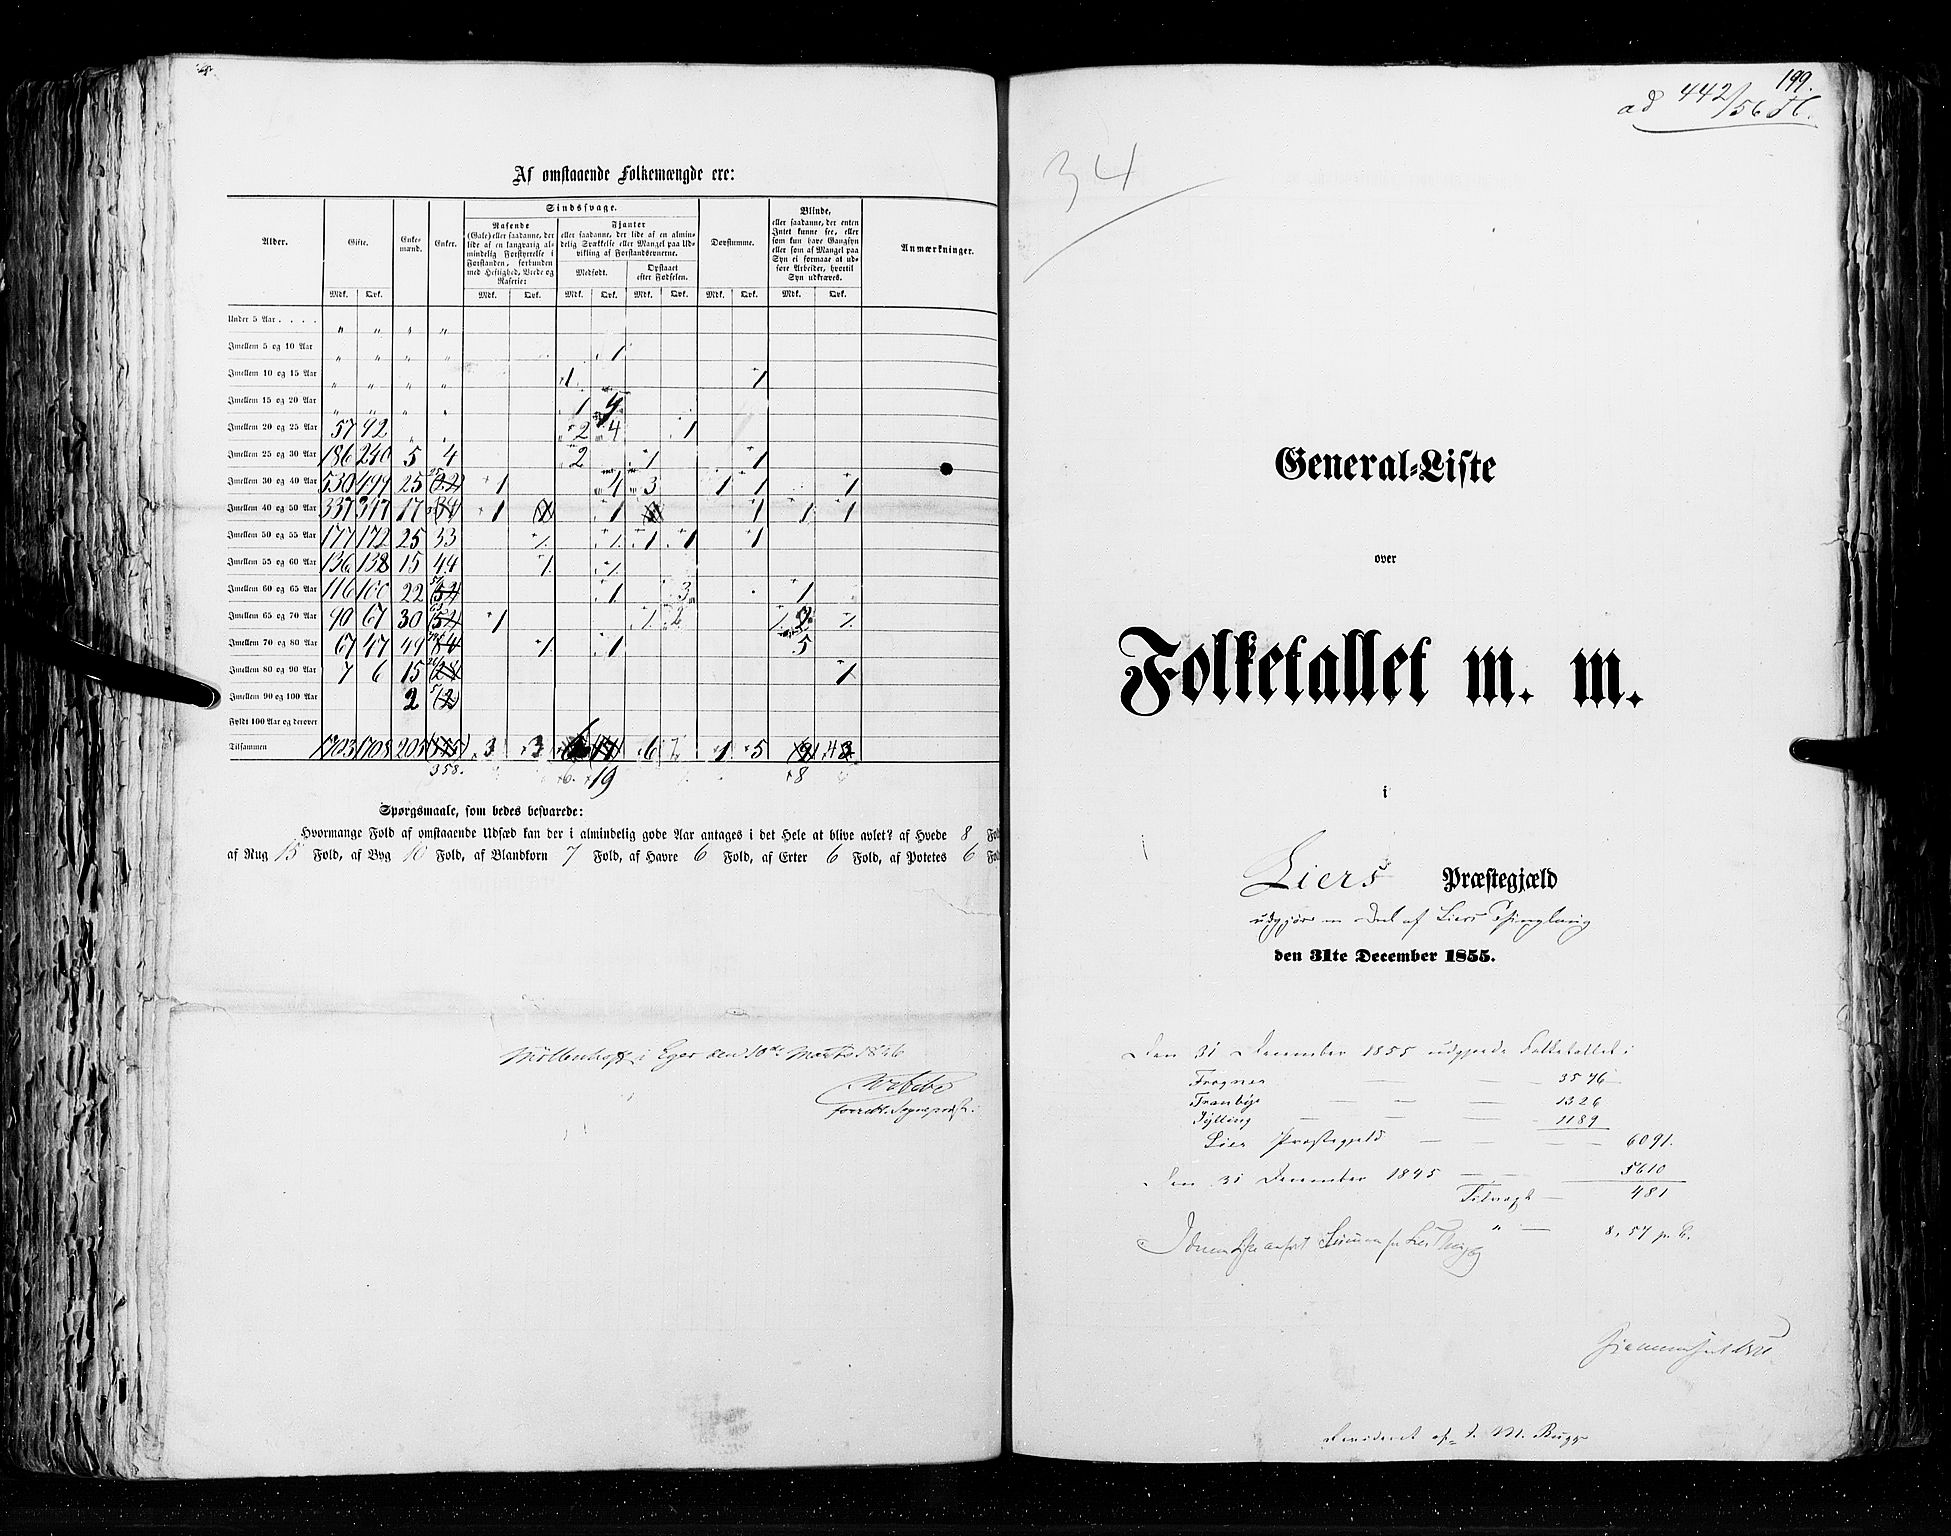 RA, Folketellingen 1855, bind 2: Kristians amt, Buskerud amt og Jarlsberg og Larvik amt, 1855, s. 199